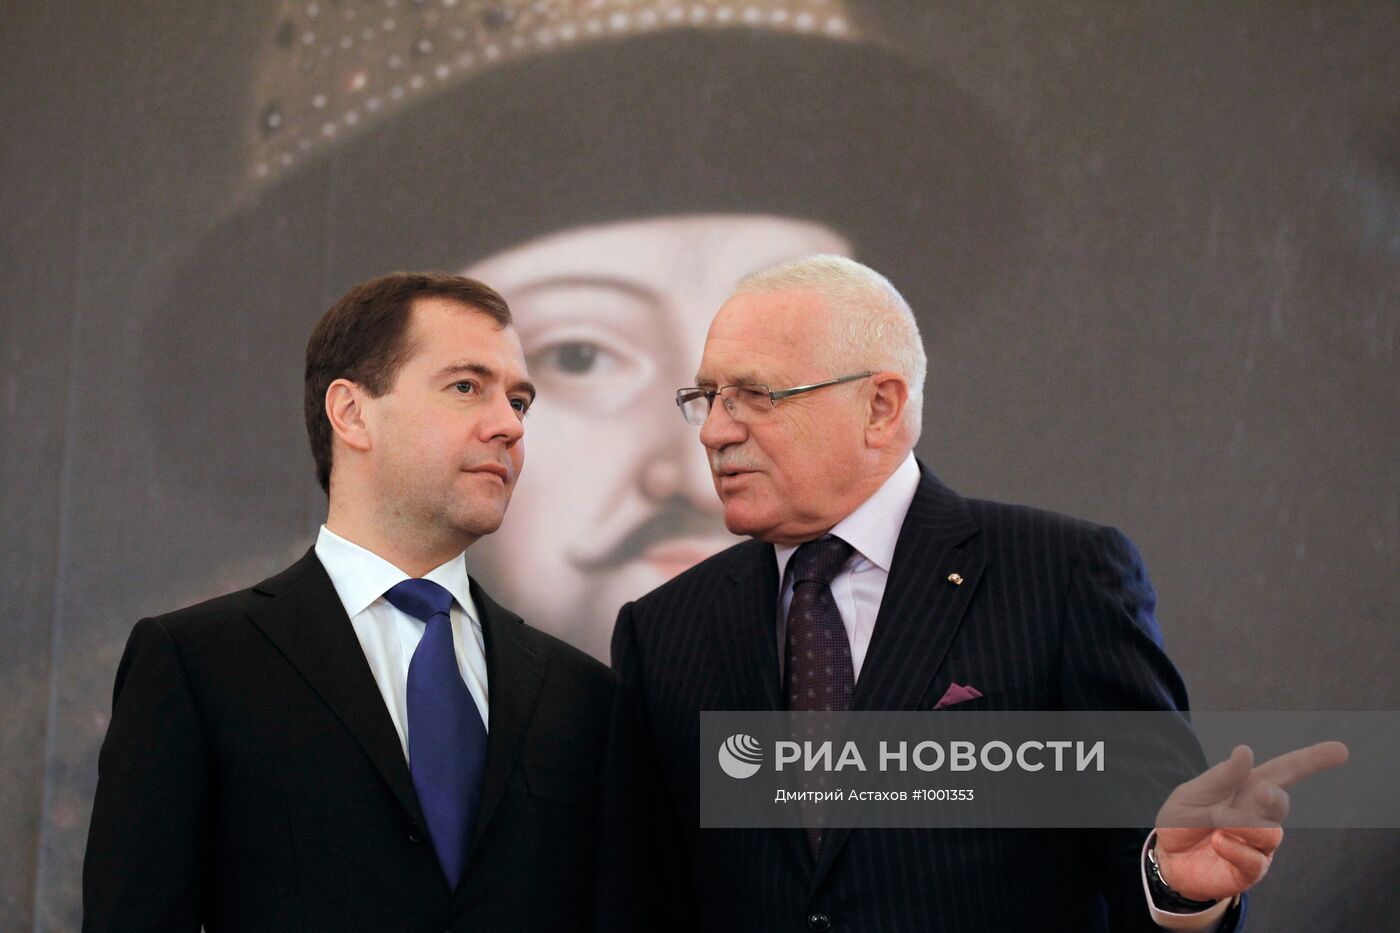 Официальный визит Д.Медведева в Чехию